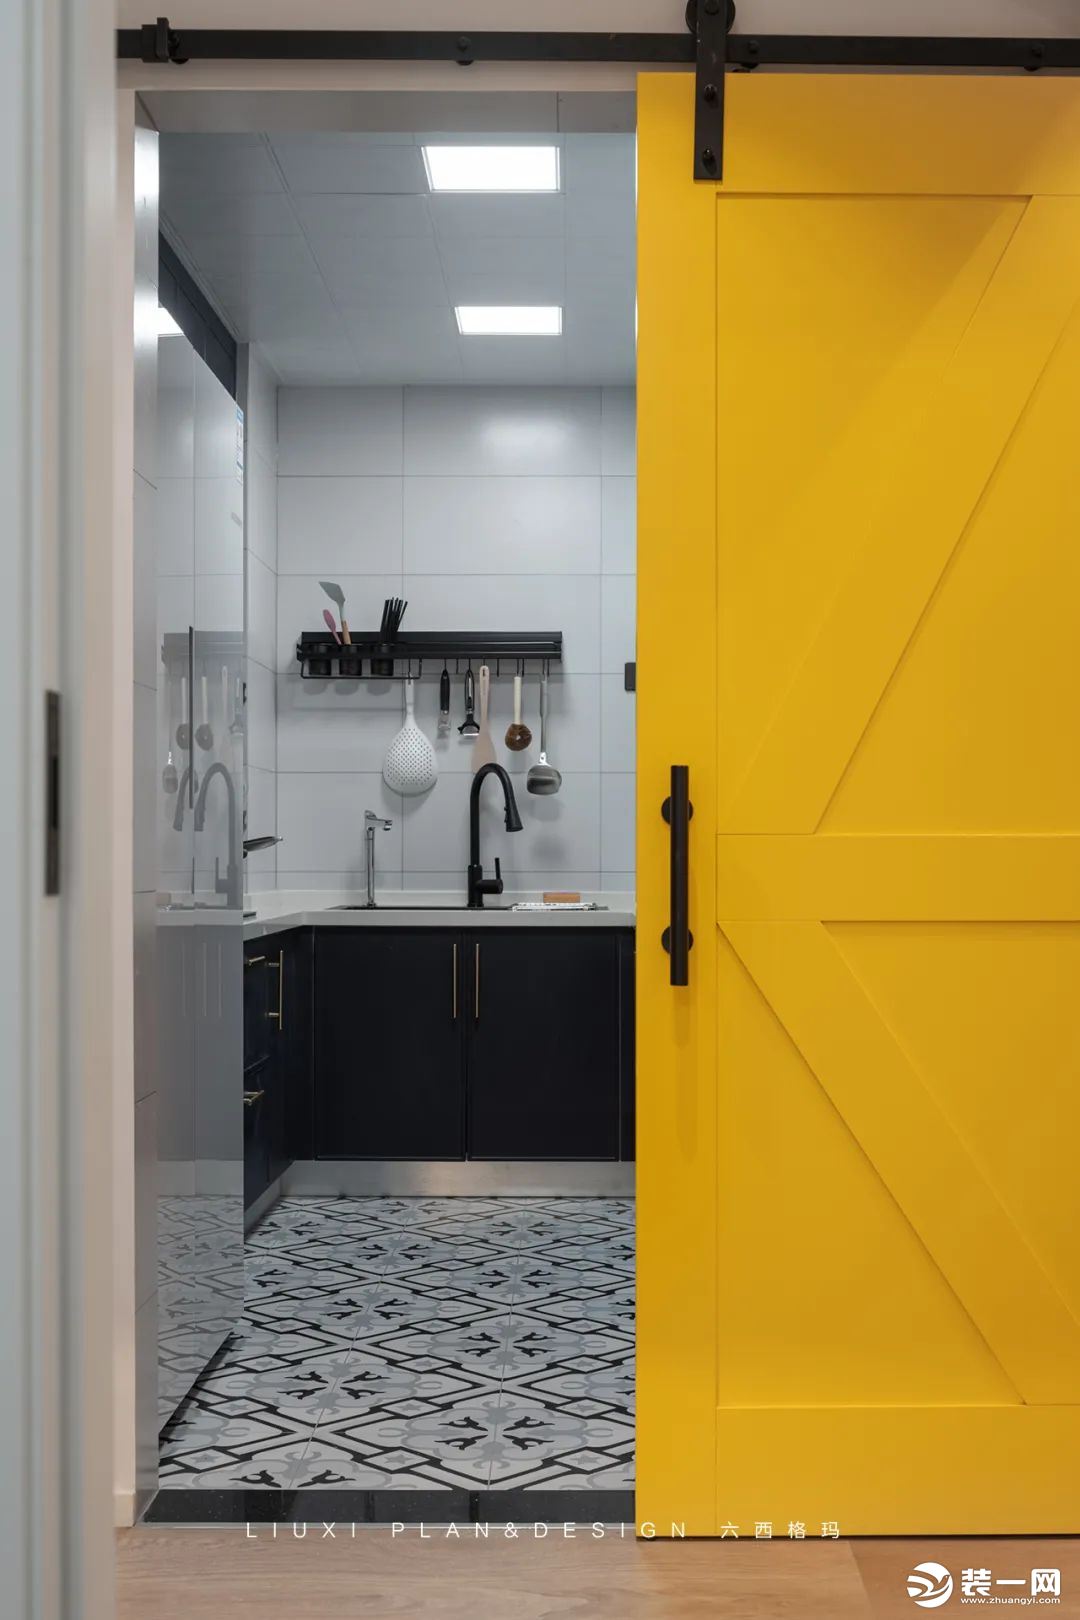 黄色谷仓门后就是厨房，亮丽的黄色看起来特别醒目。厨房的面积不大，白色瓷砖装饰的墙面，配上定制的湖蓝色